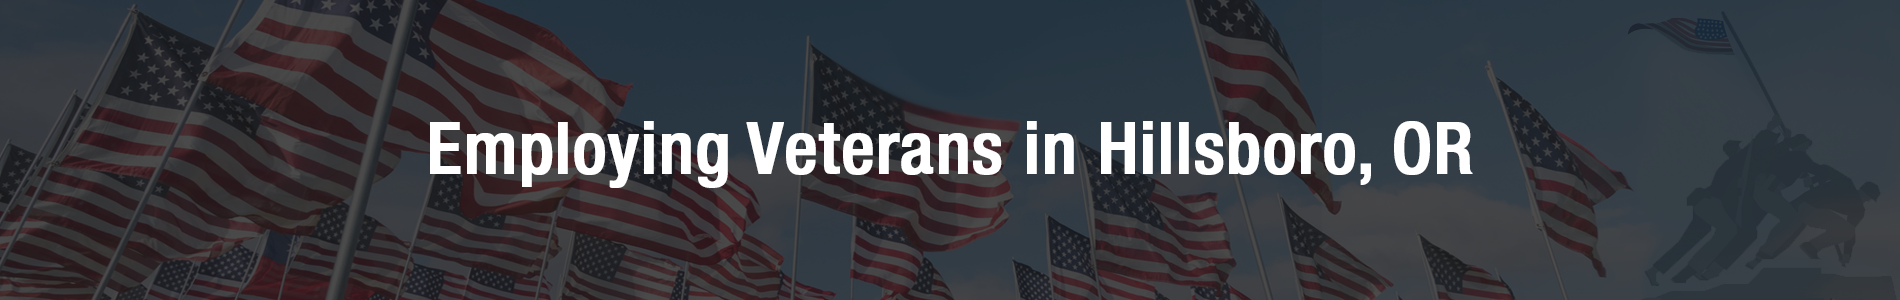 Employing Veterans - Internal Banner